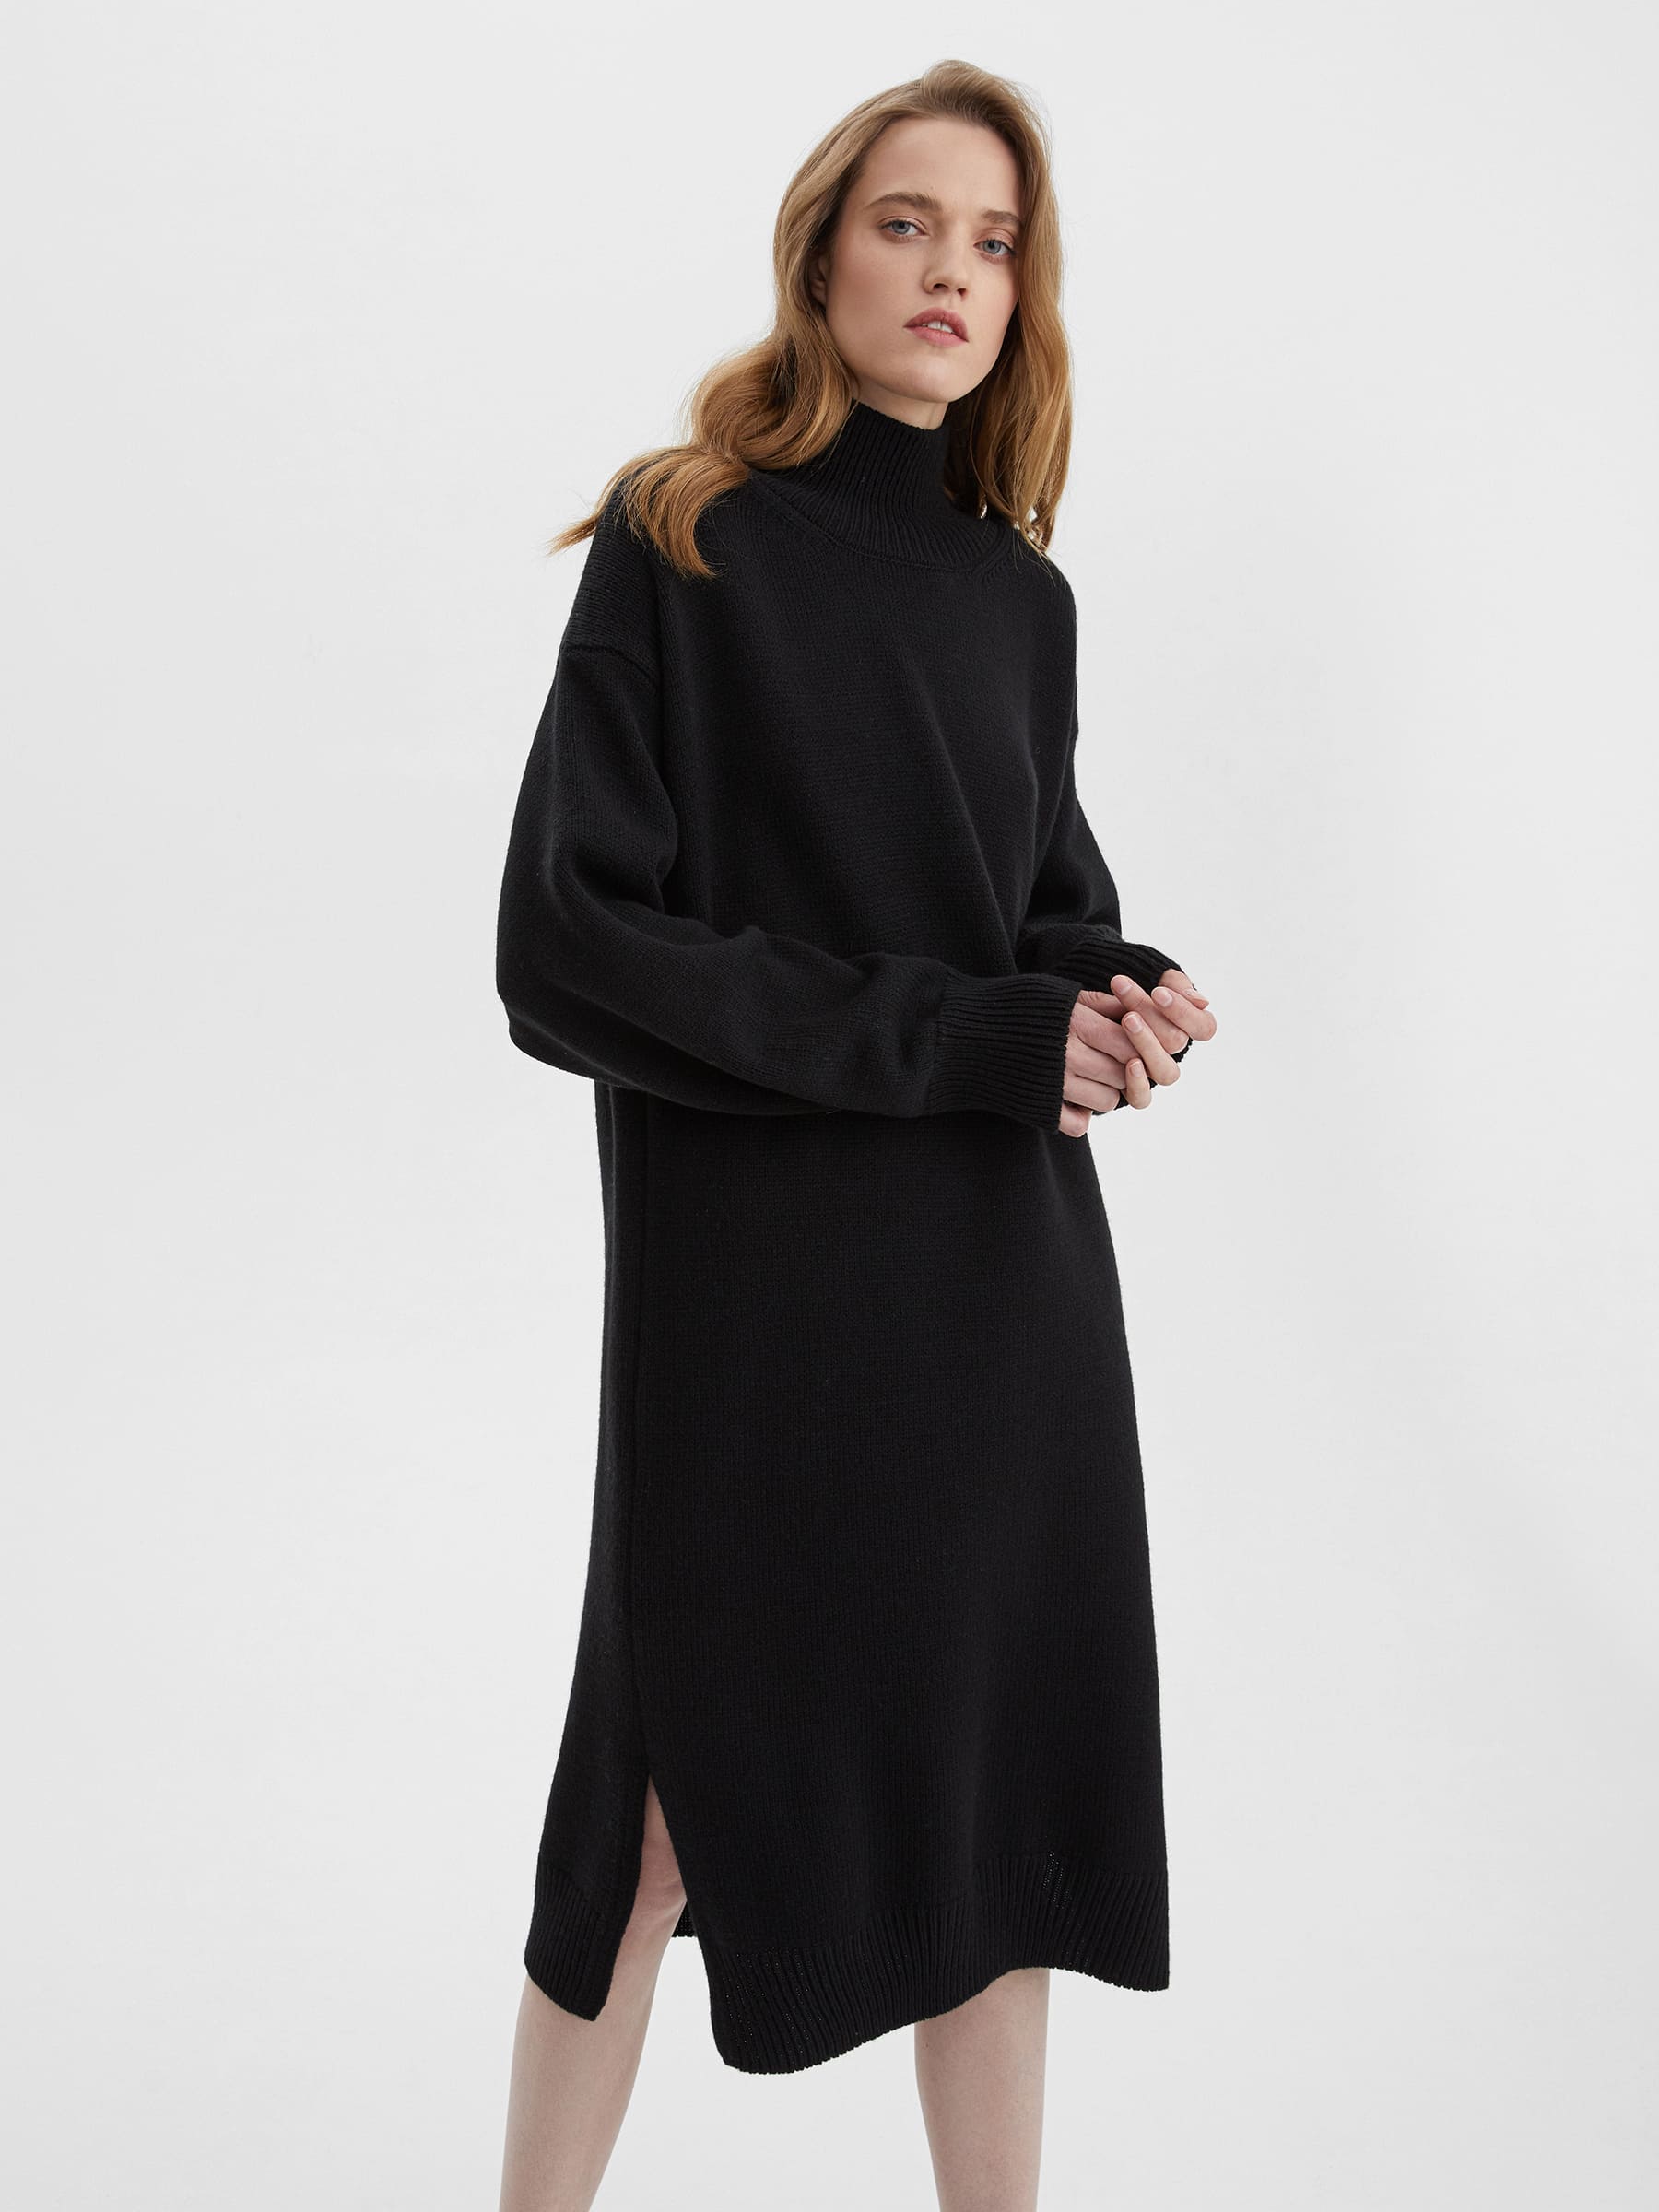 Платье свободного кроя вязаное, цвет – чёрный платье свободного кроя вязаное цвет – чёрный